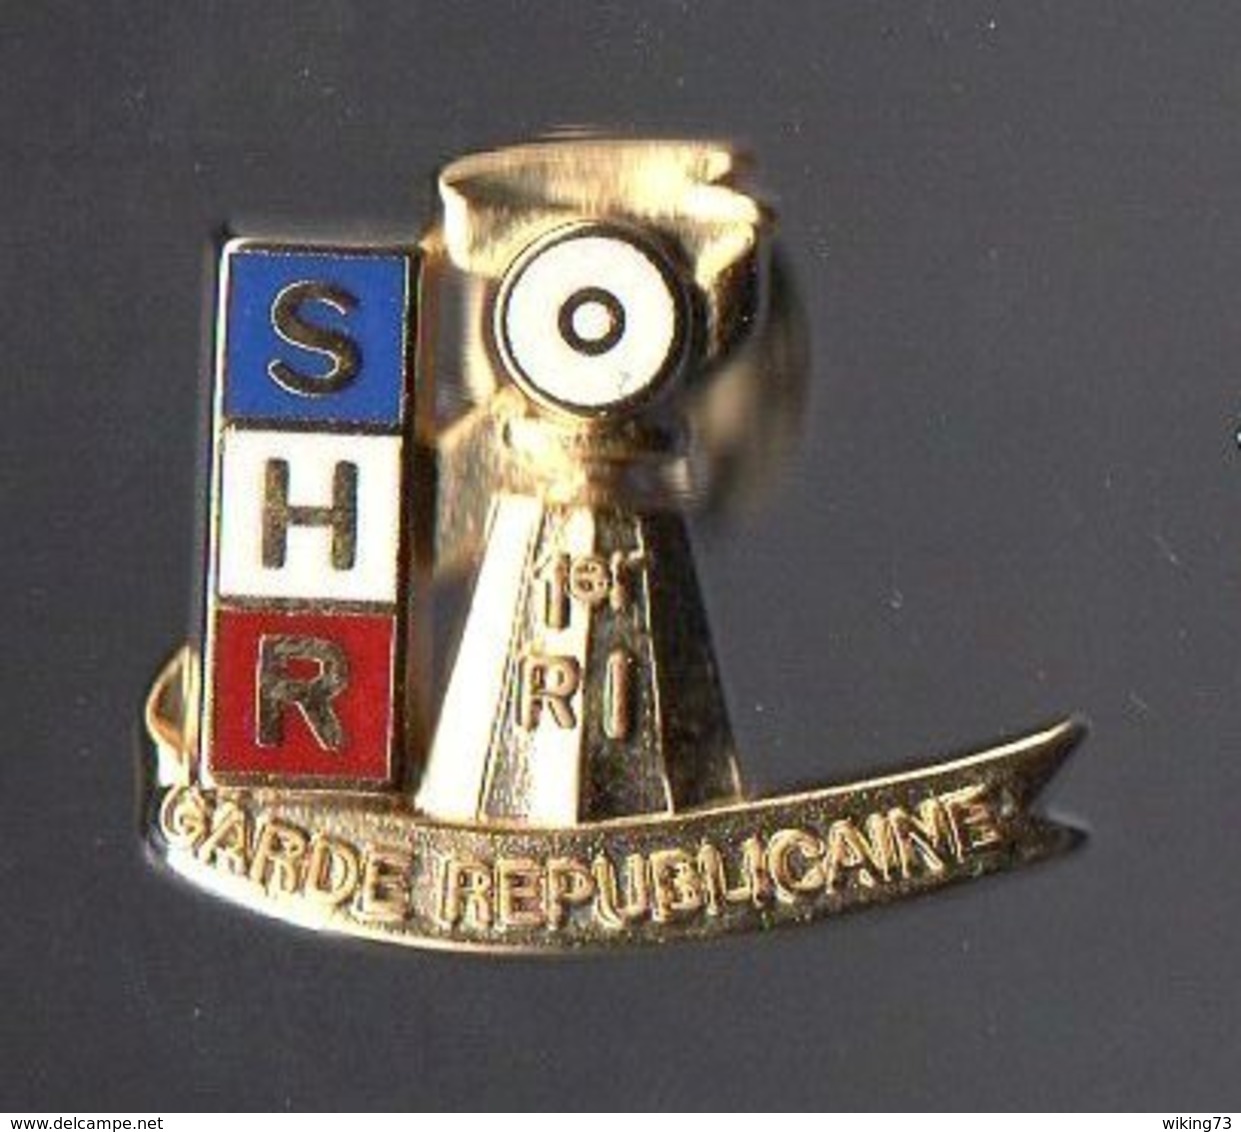 Pin's SHR Du 1er Régiment D' Infanterie De La Garde Républicaine - Gendarmerie Nationale - Militaria